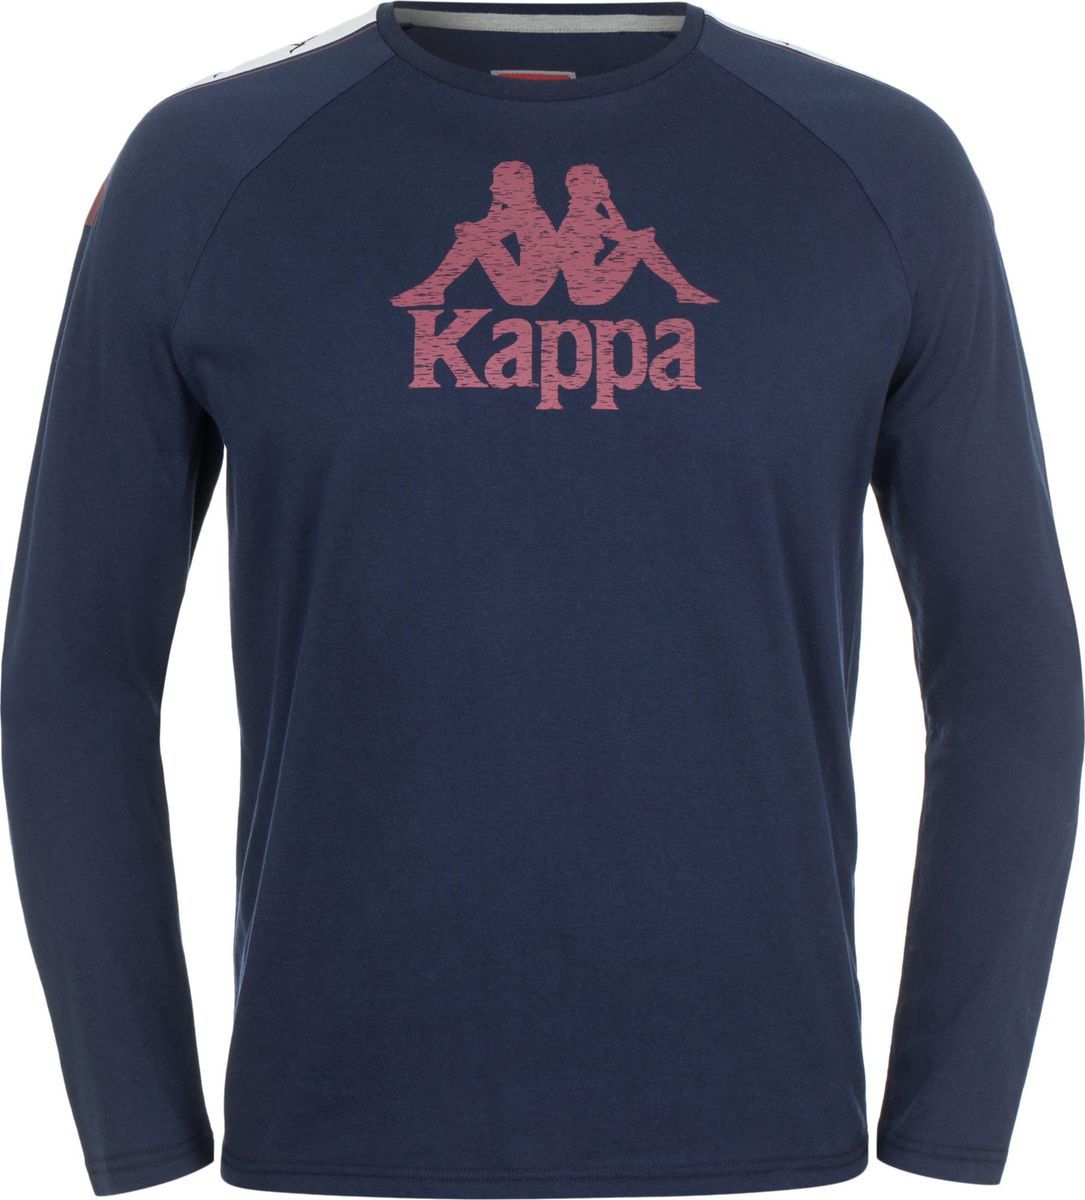   Kappa Men's Jumper, : -. 303SZD0-X1Z.  S (46)